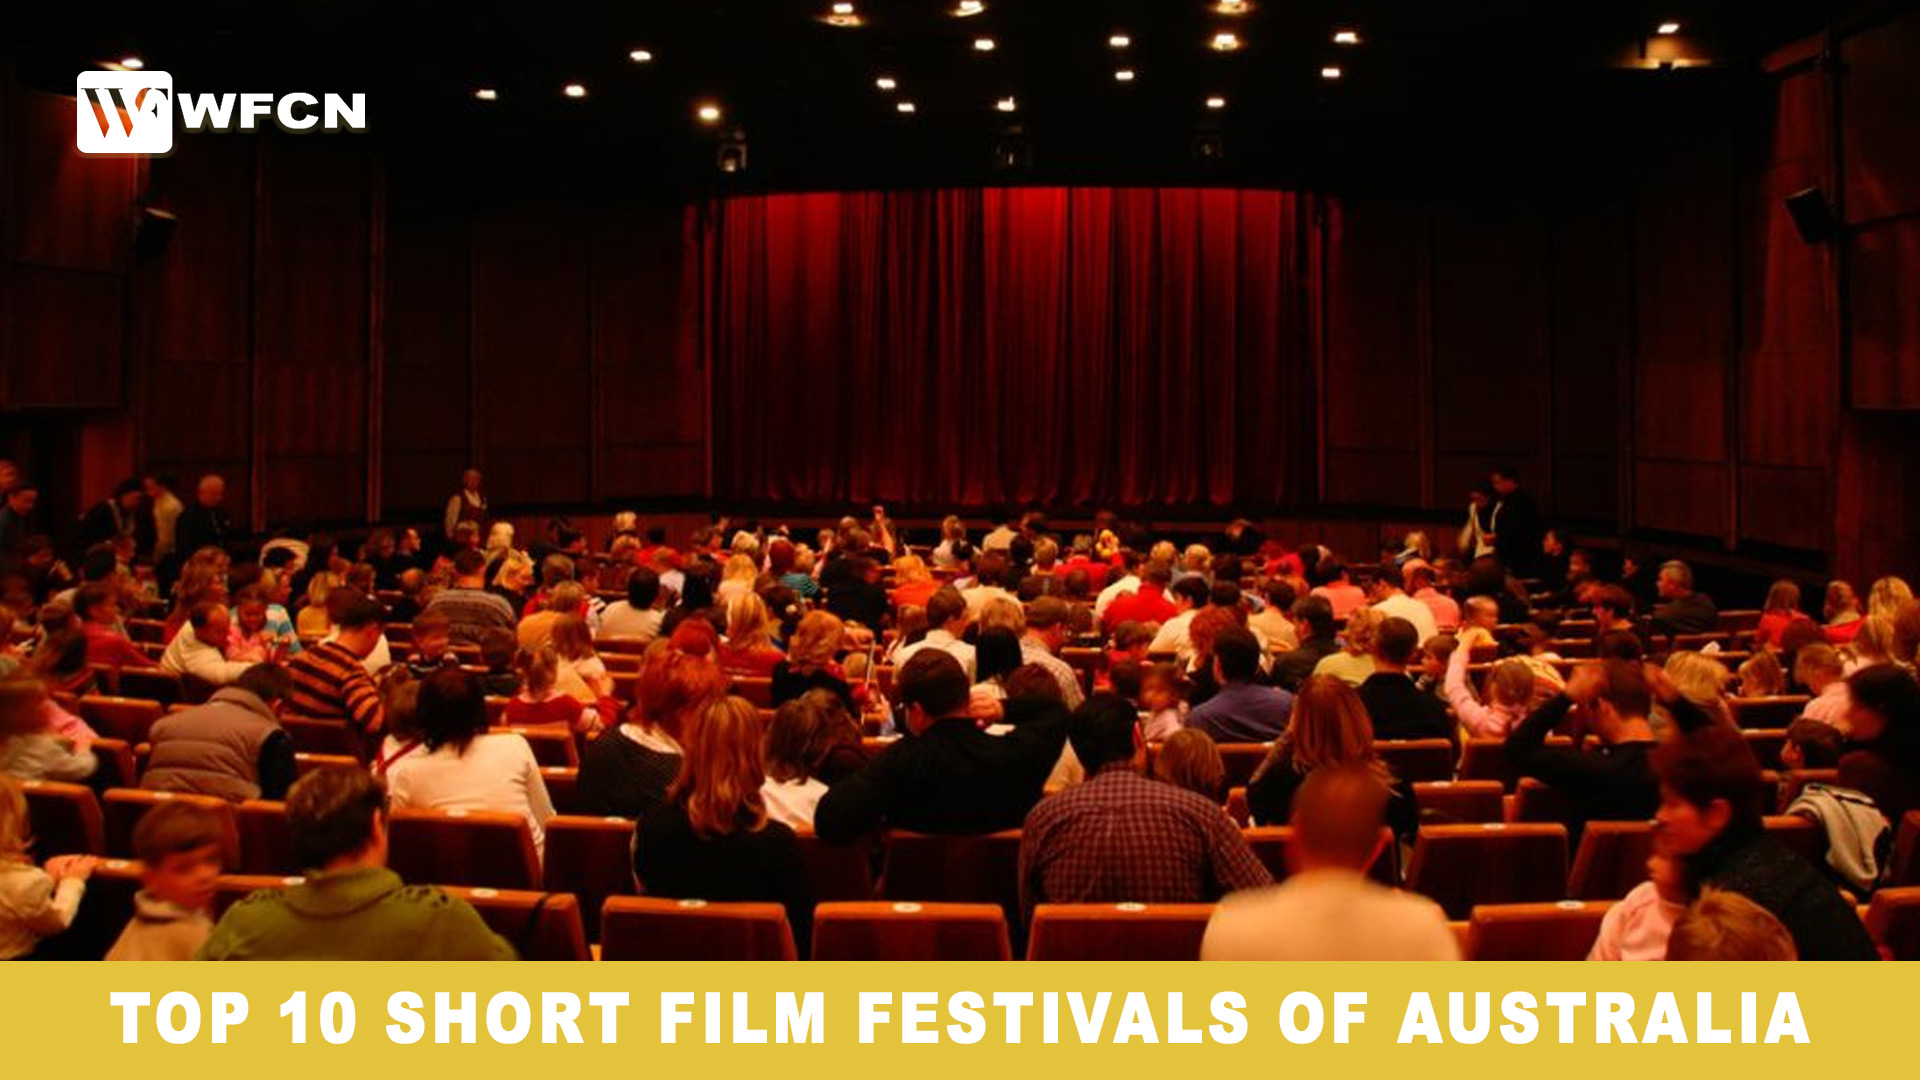 Top 10 Short Film Festivals of Australia